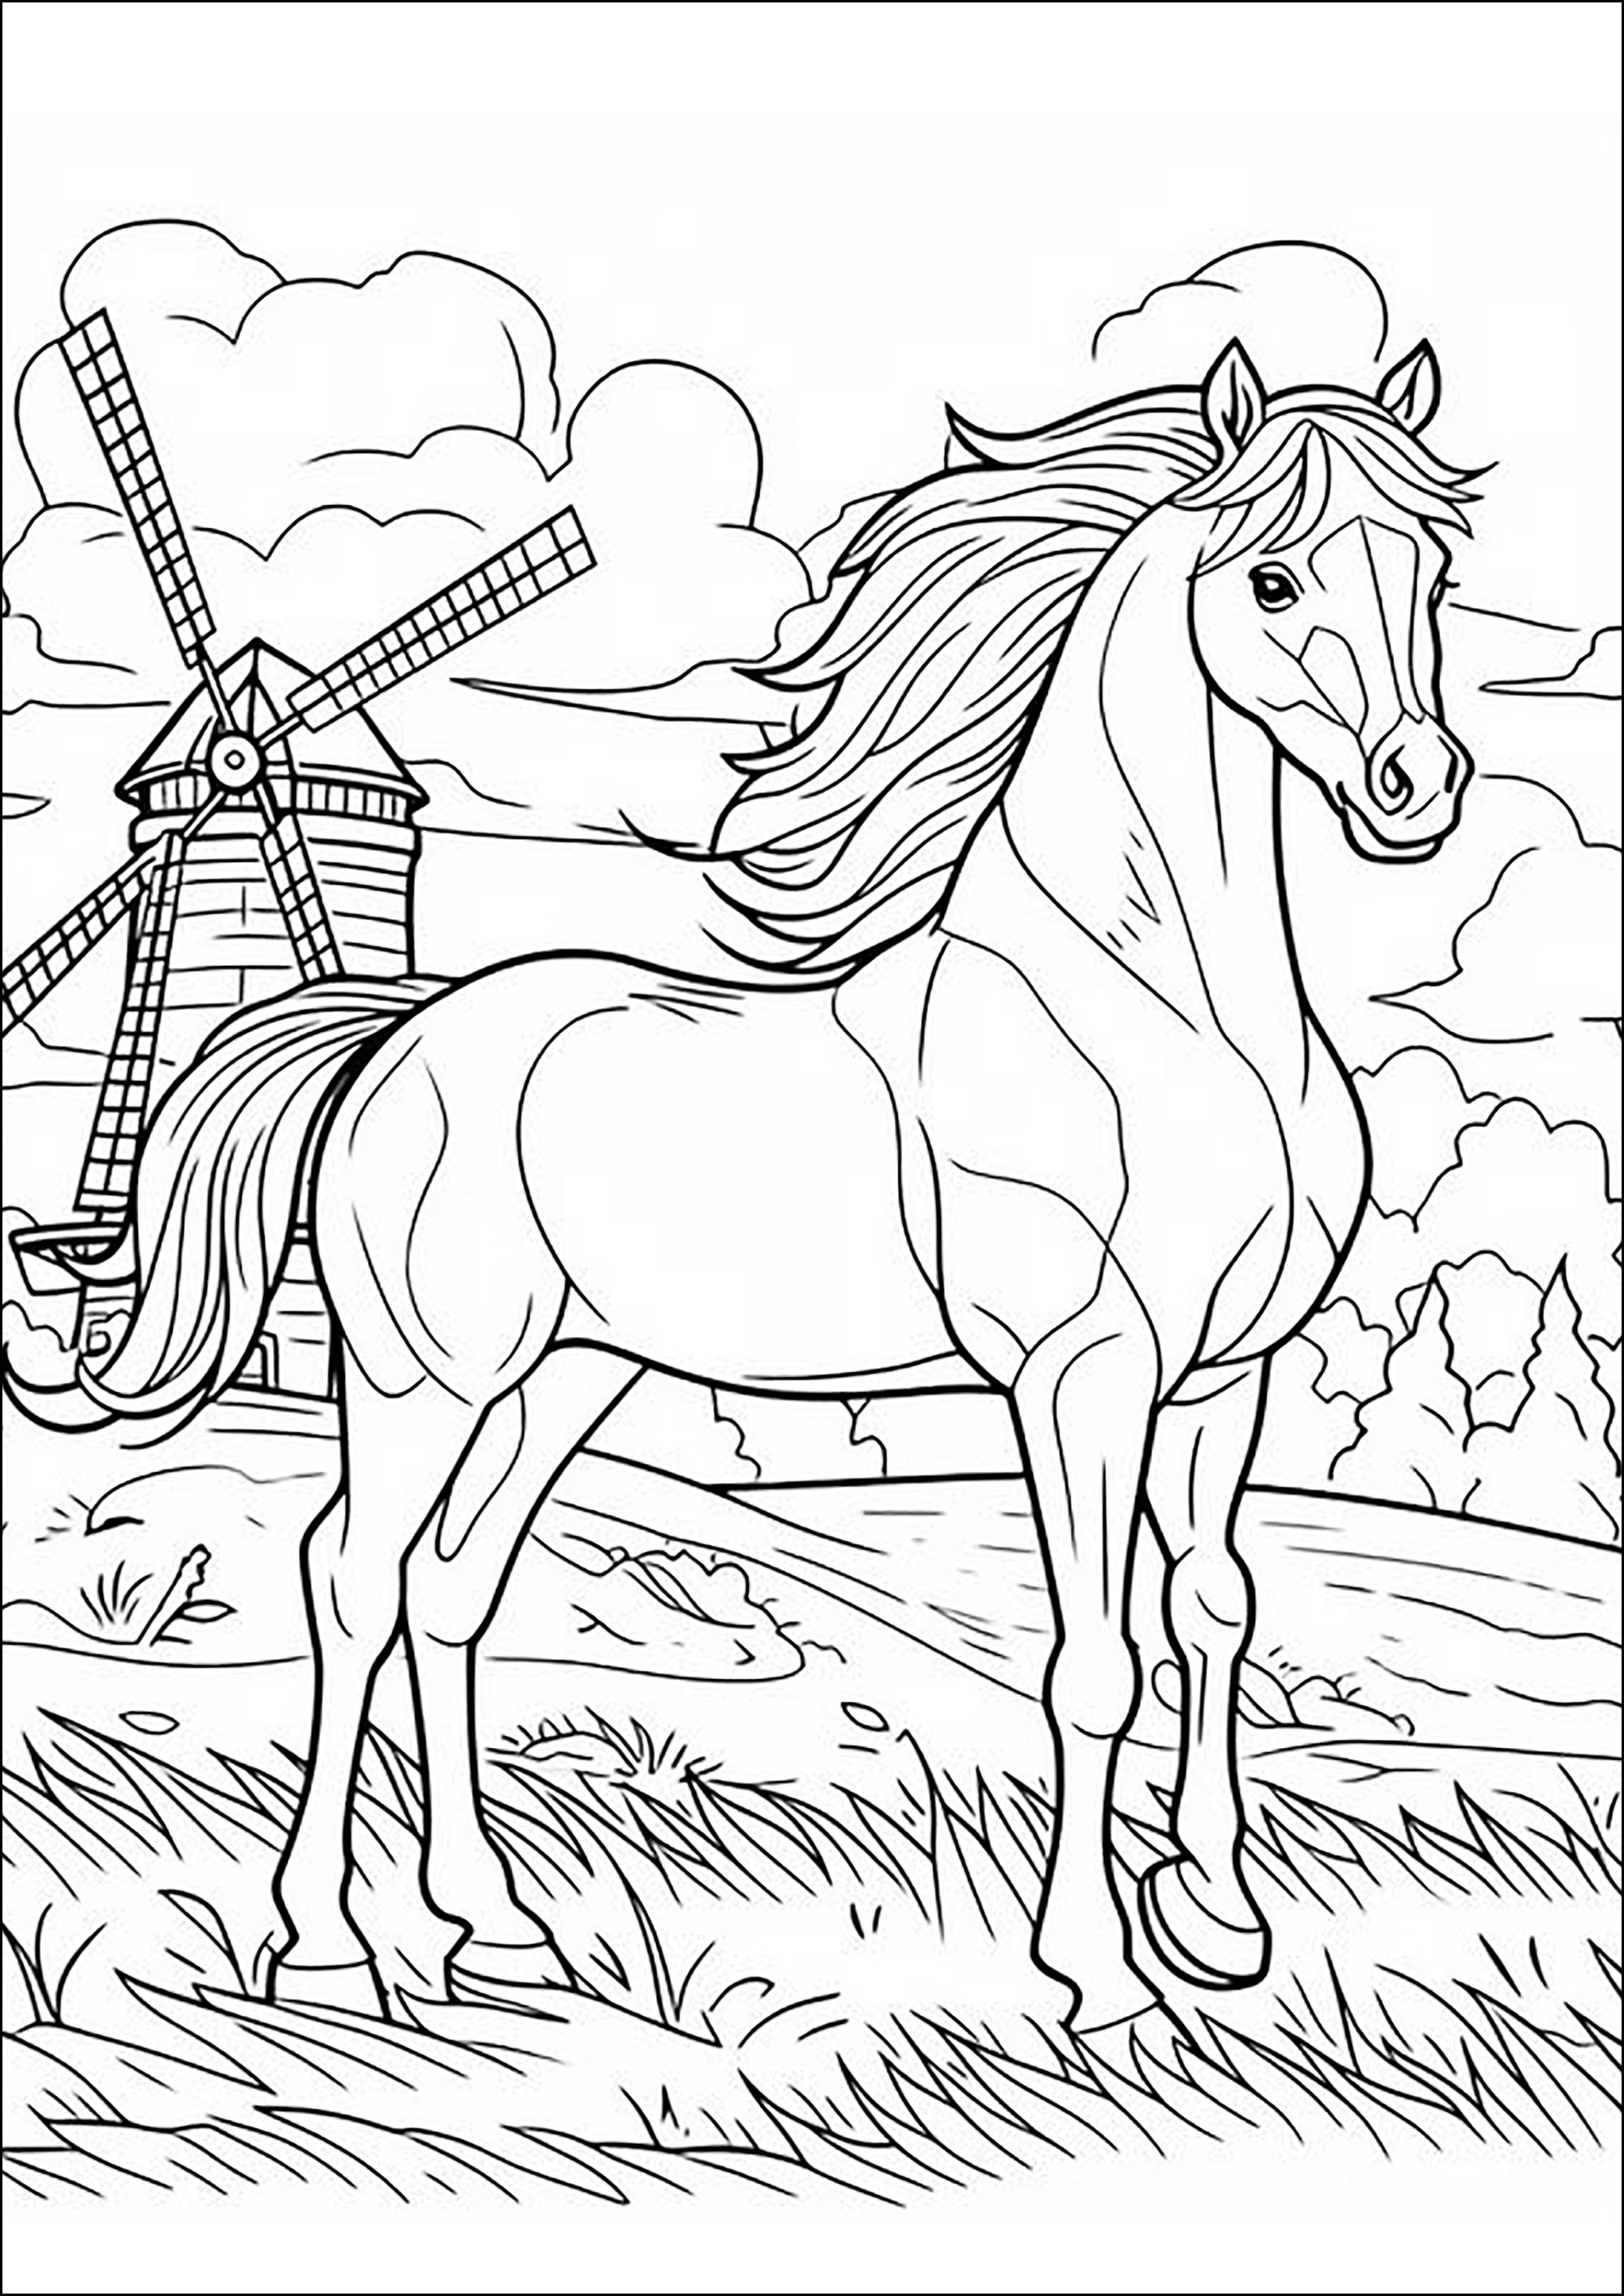 Pferd mit Mähne im Wind, mit einer Windmühle im Hintergrund. Eine inspirierende Malvorlage